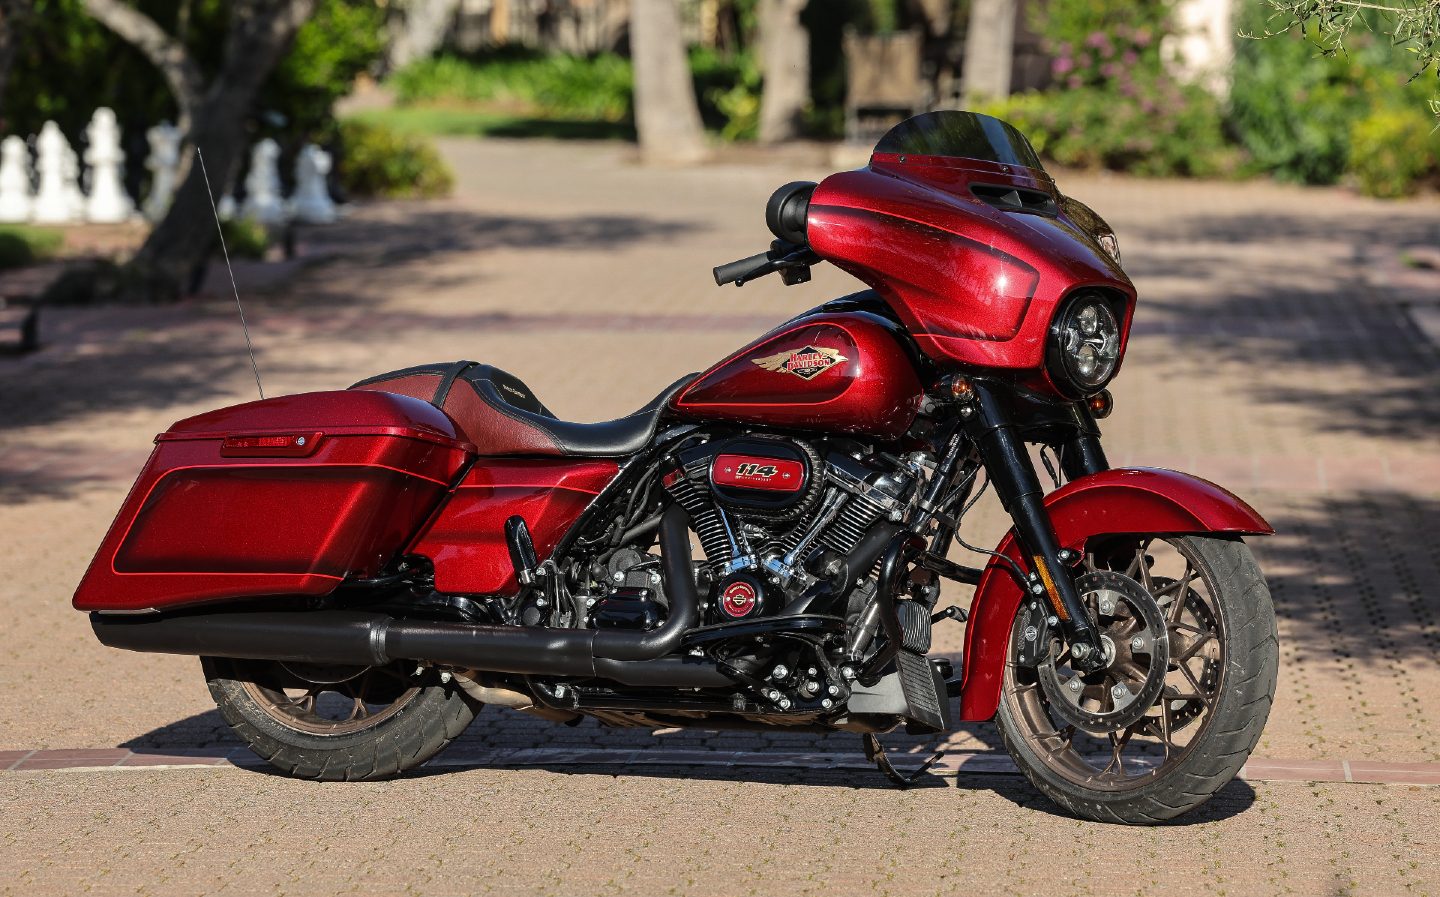 New Harley Davidson Models expected up until 2022